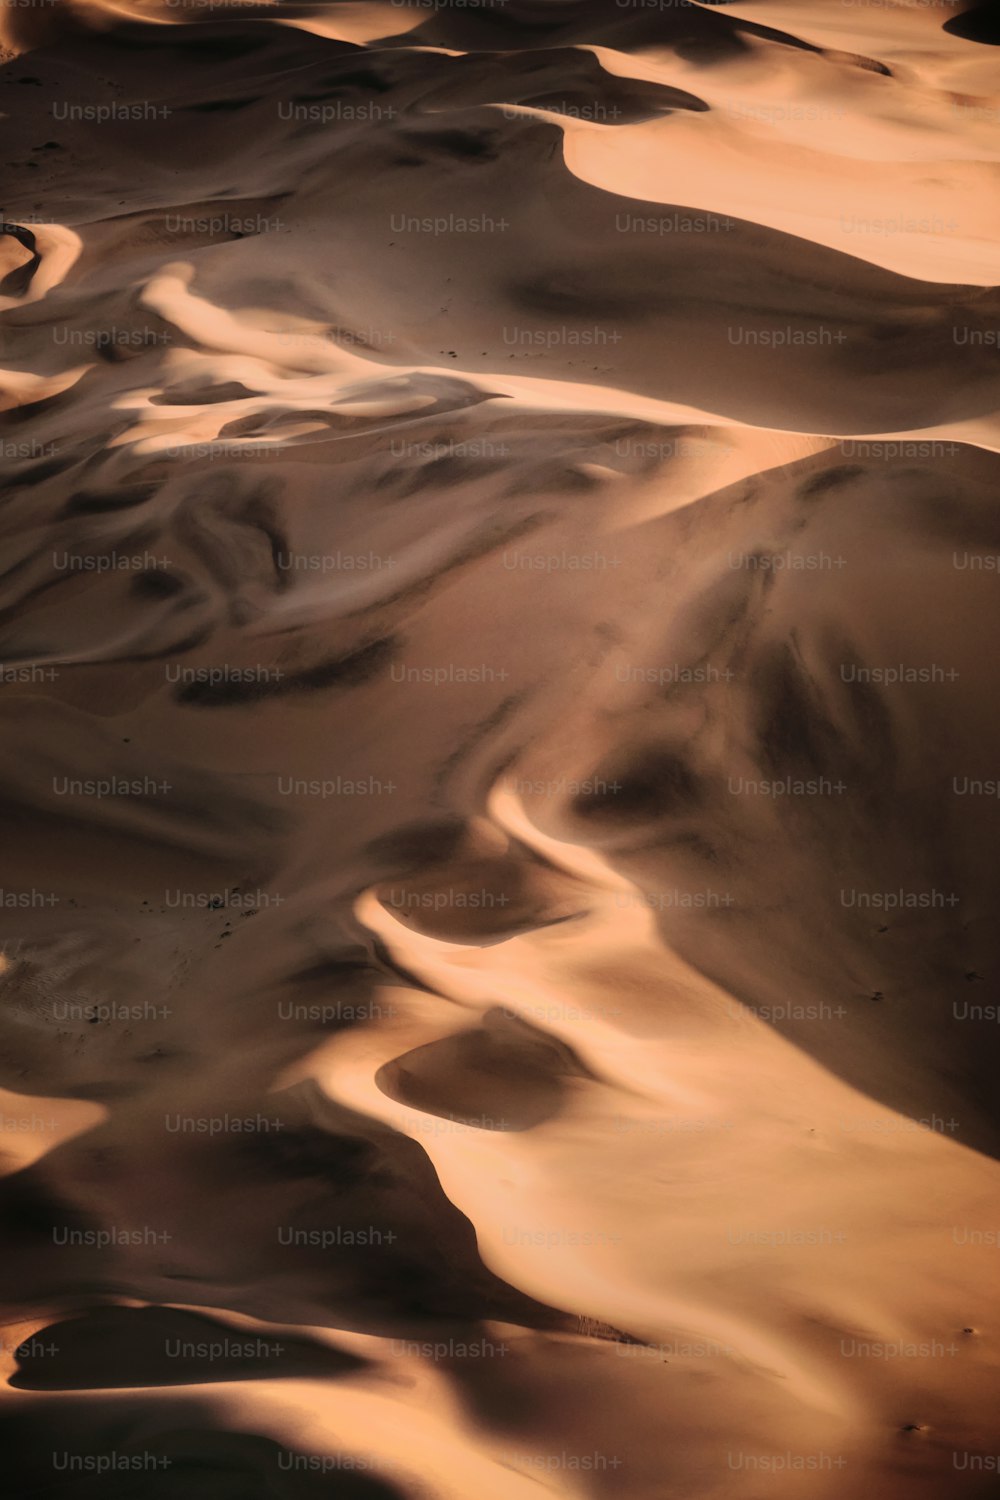 Blick auf eine Wüste mit Sanddünen